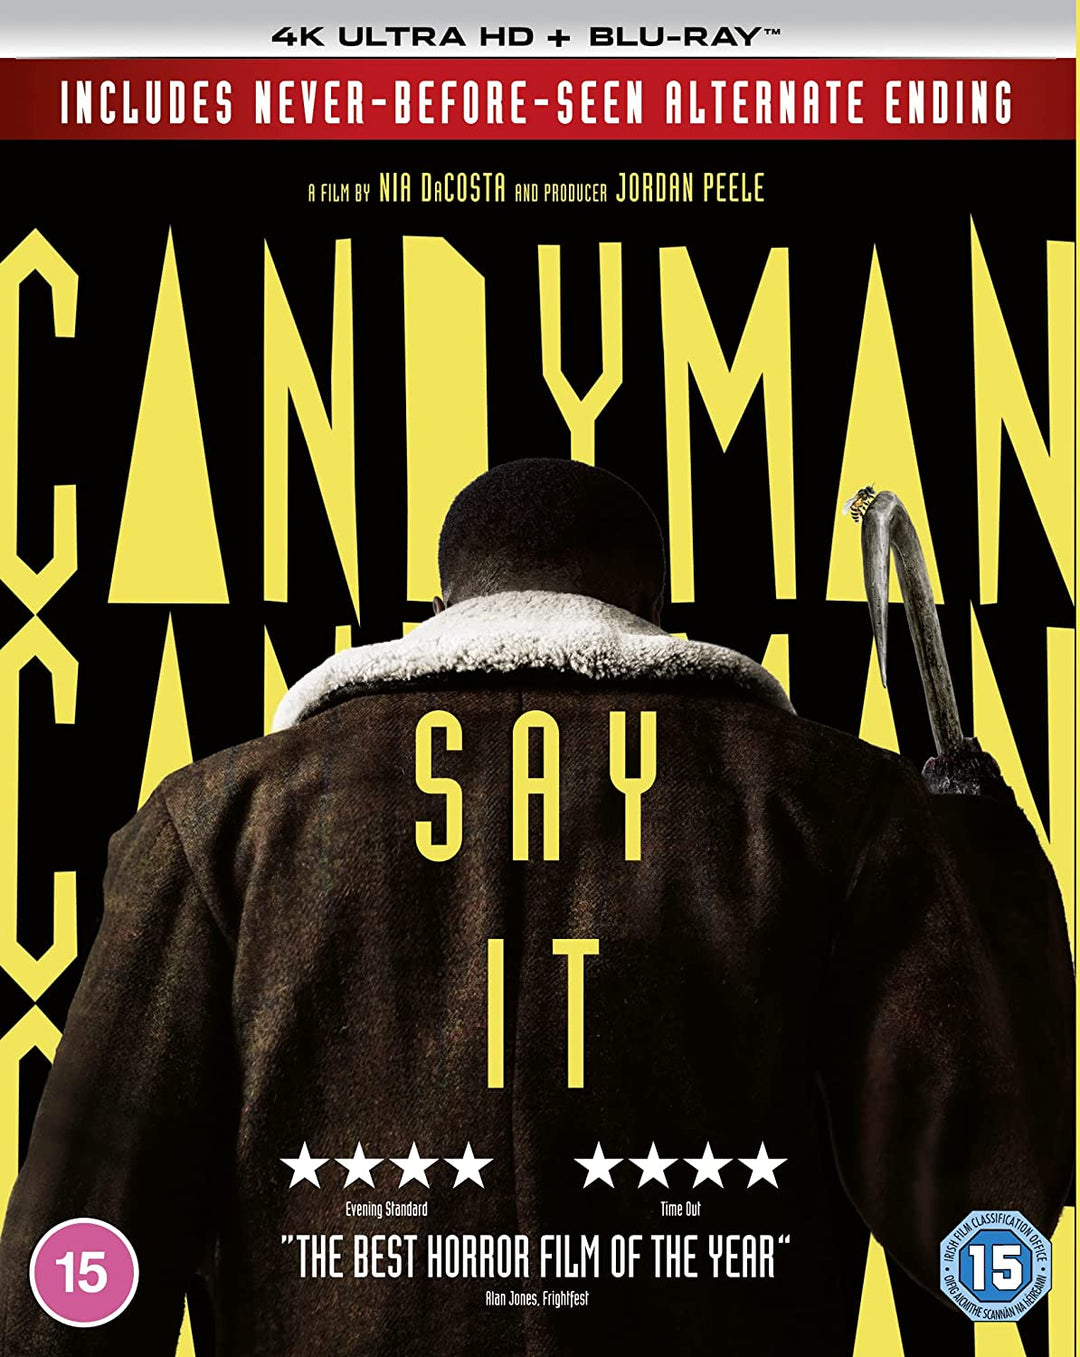 Candyman [4K UHD] [2021] [Blu-ray] [Region Free] – Horror/Thriller [Blu-ray]